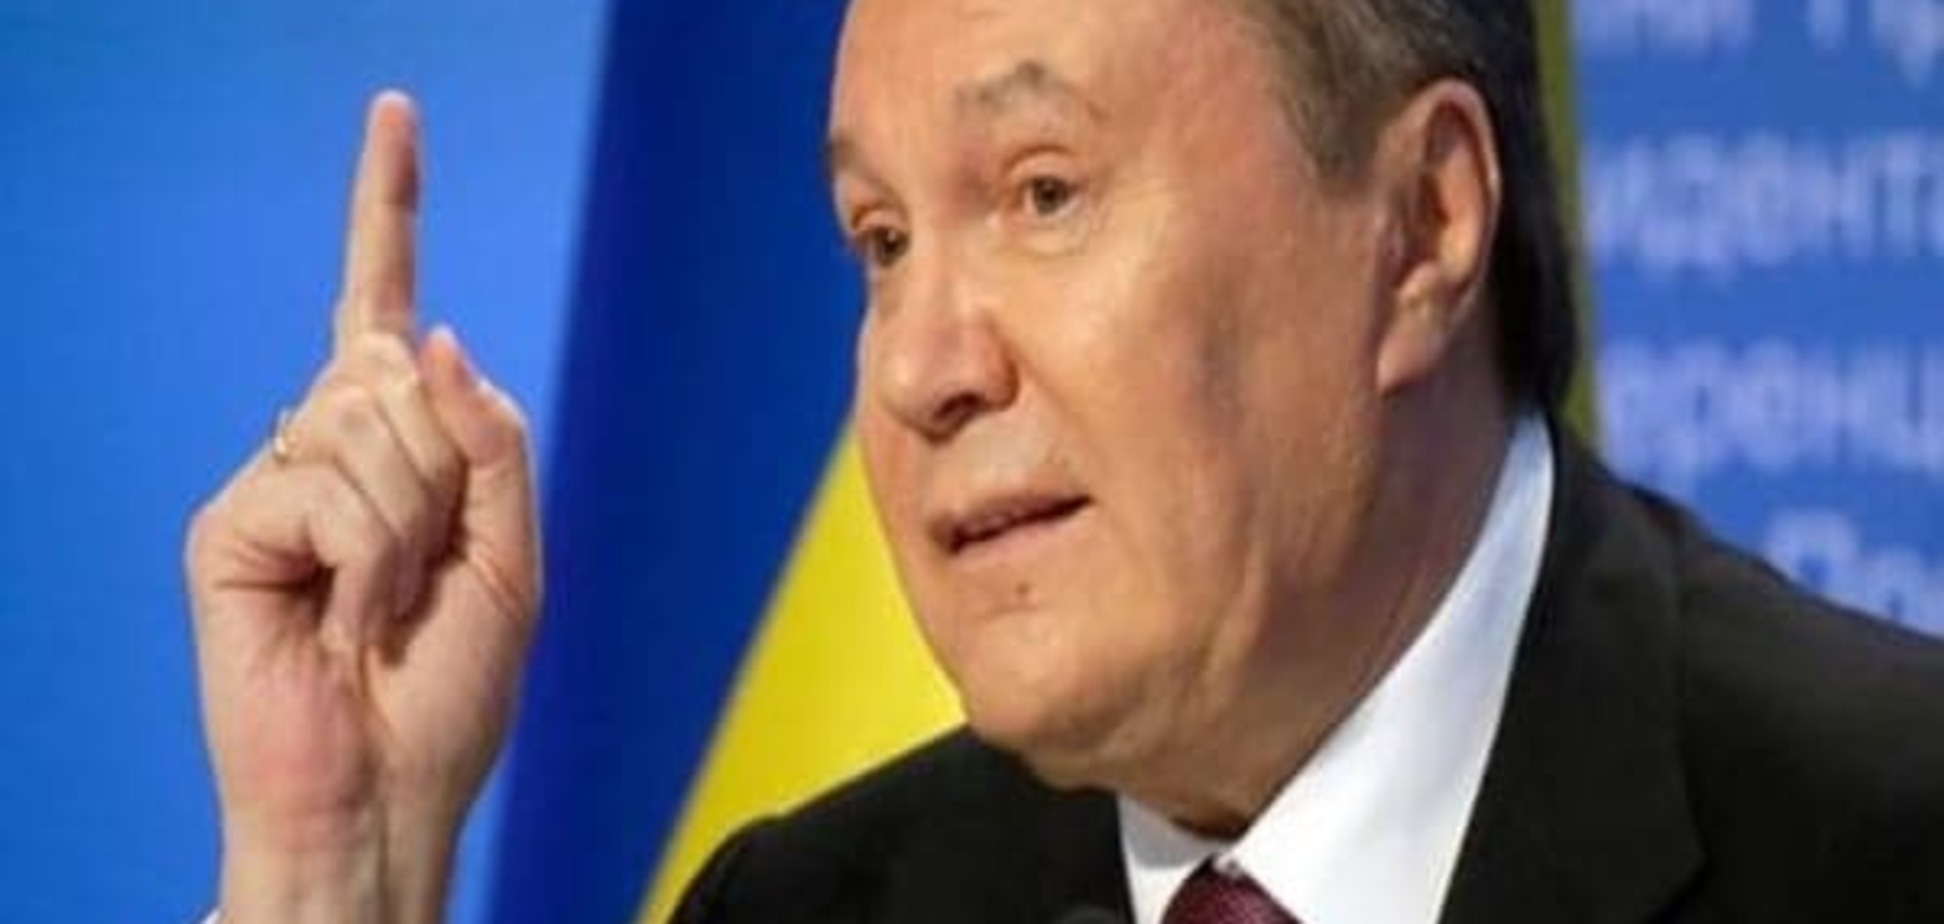 Експерти: Фінансові махінації Януковича доводити важко